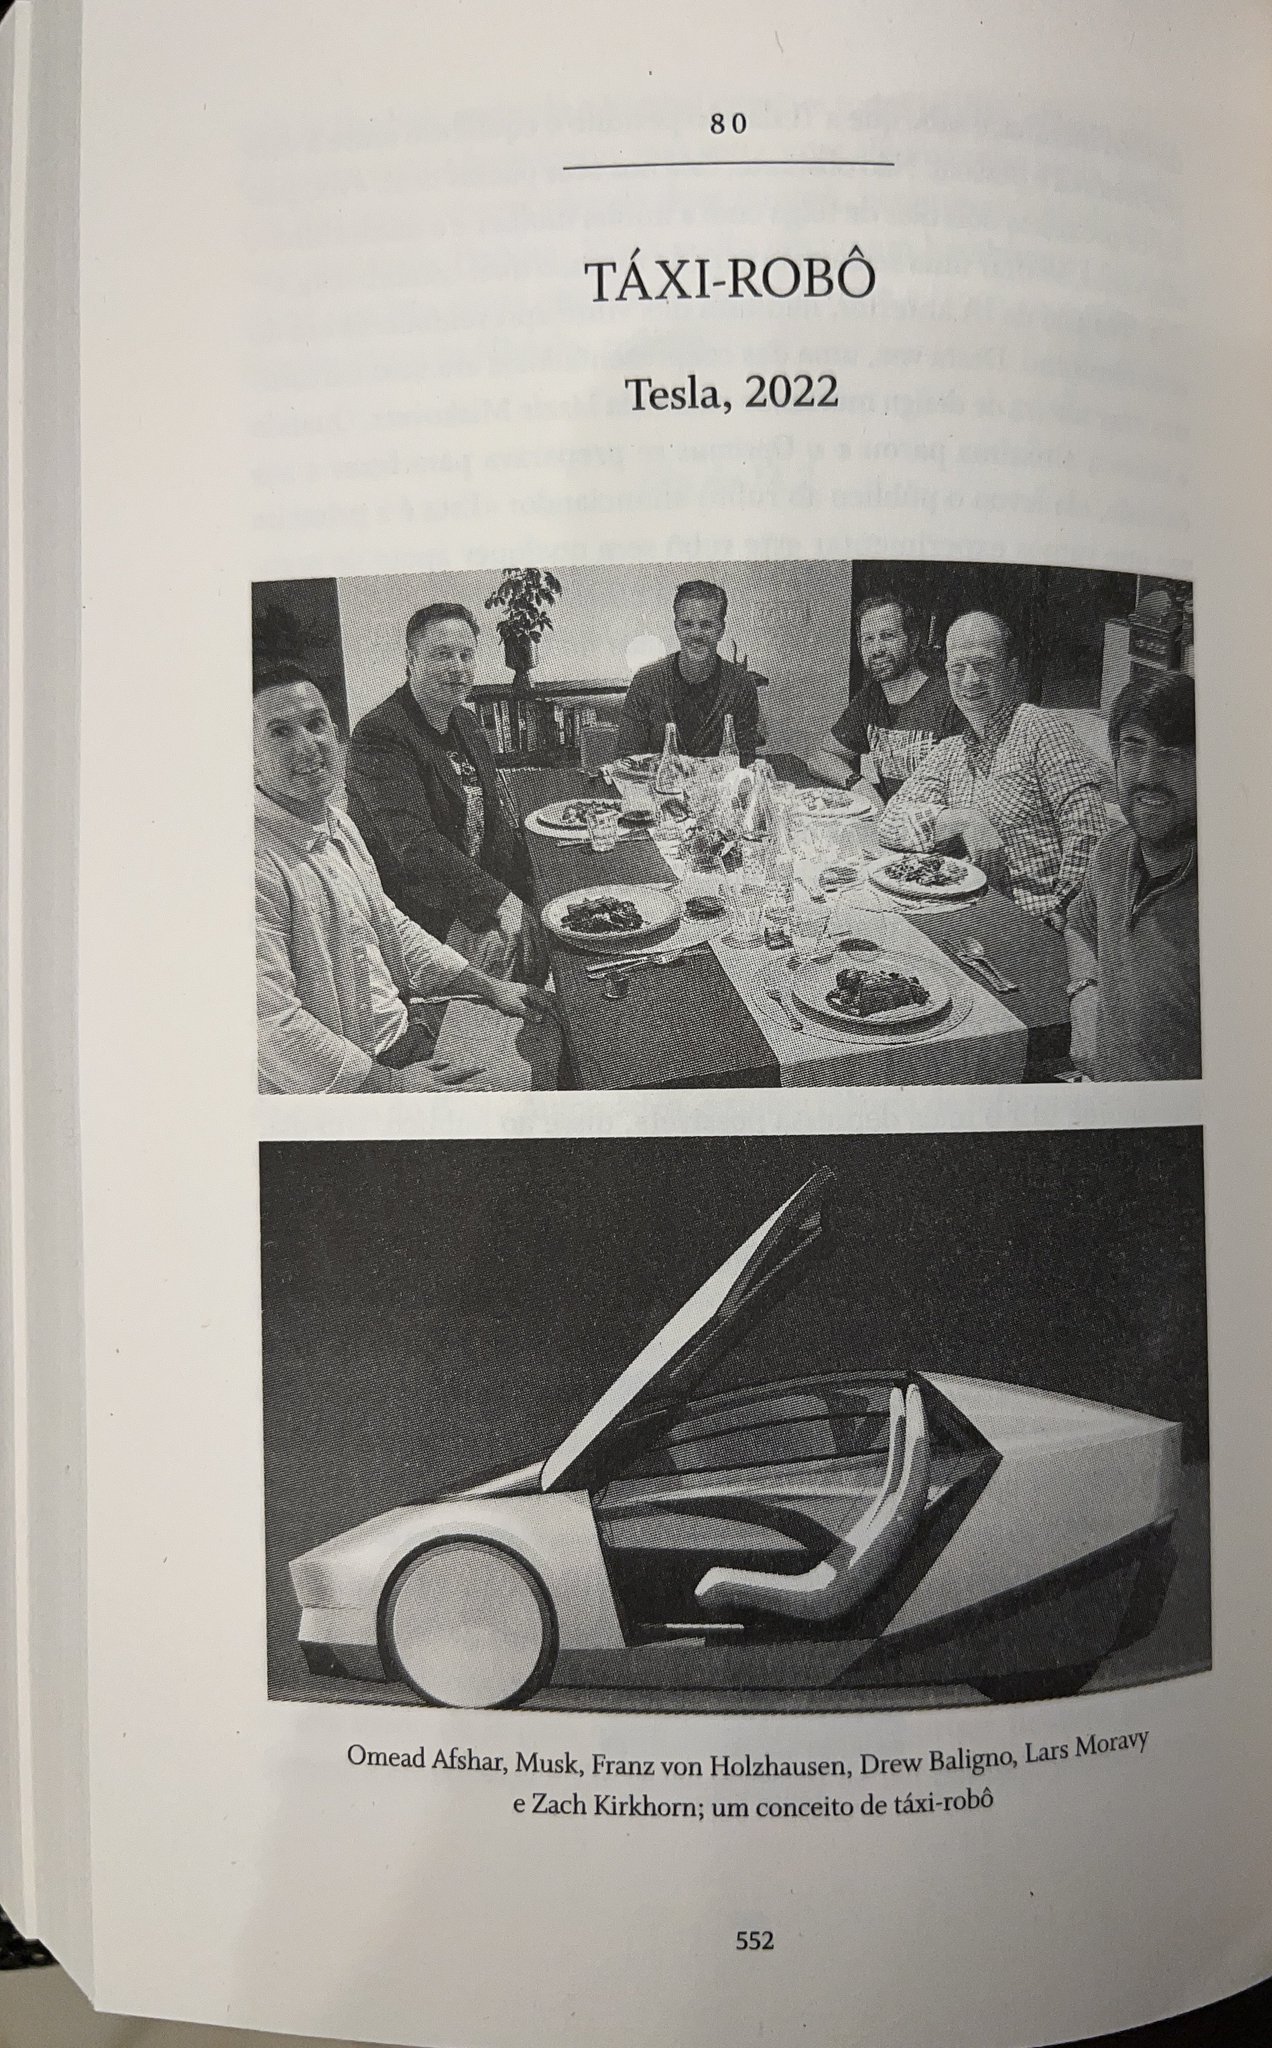 Зображення електрокара опублікували в біографії Ілона Маска